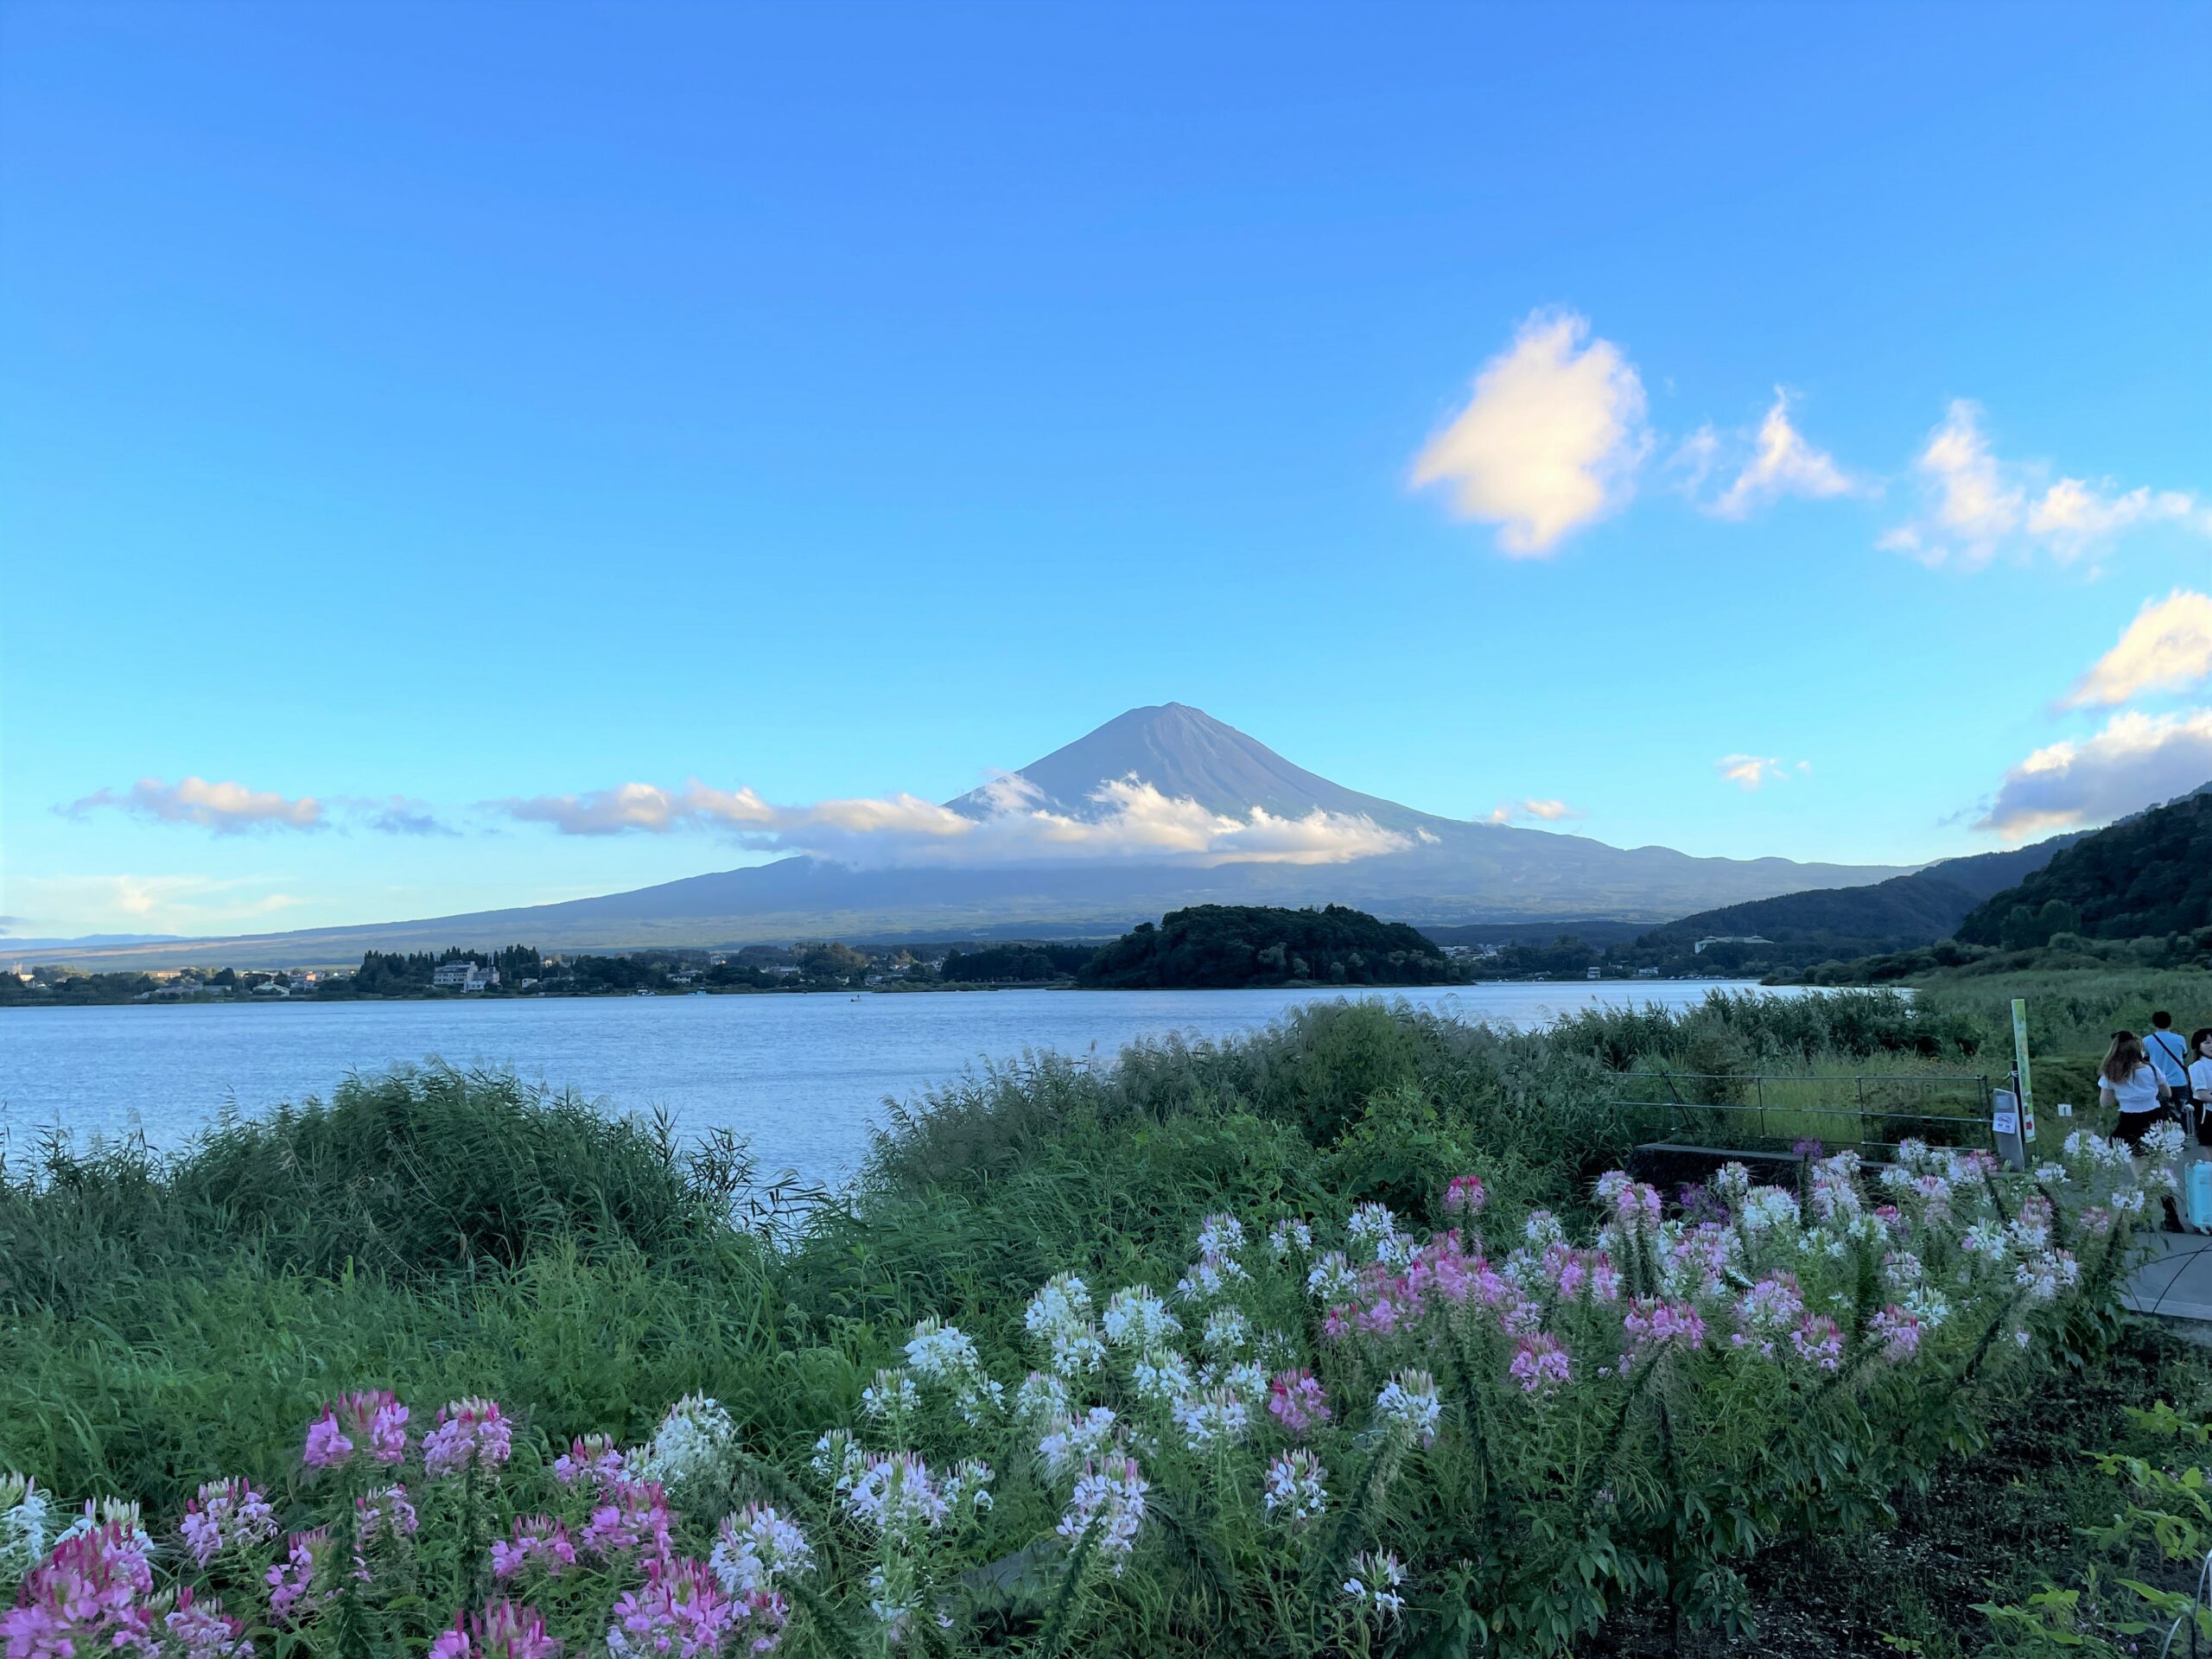 Fuji mountain scene